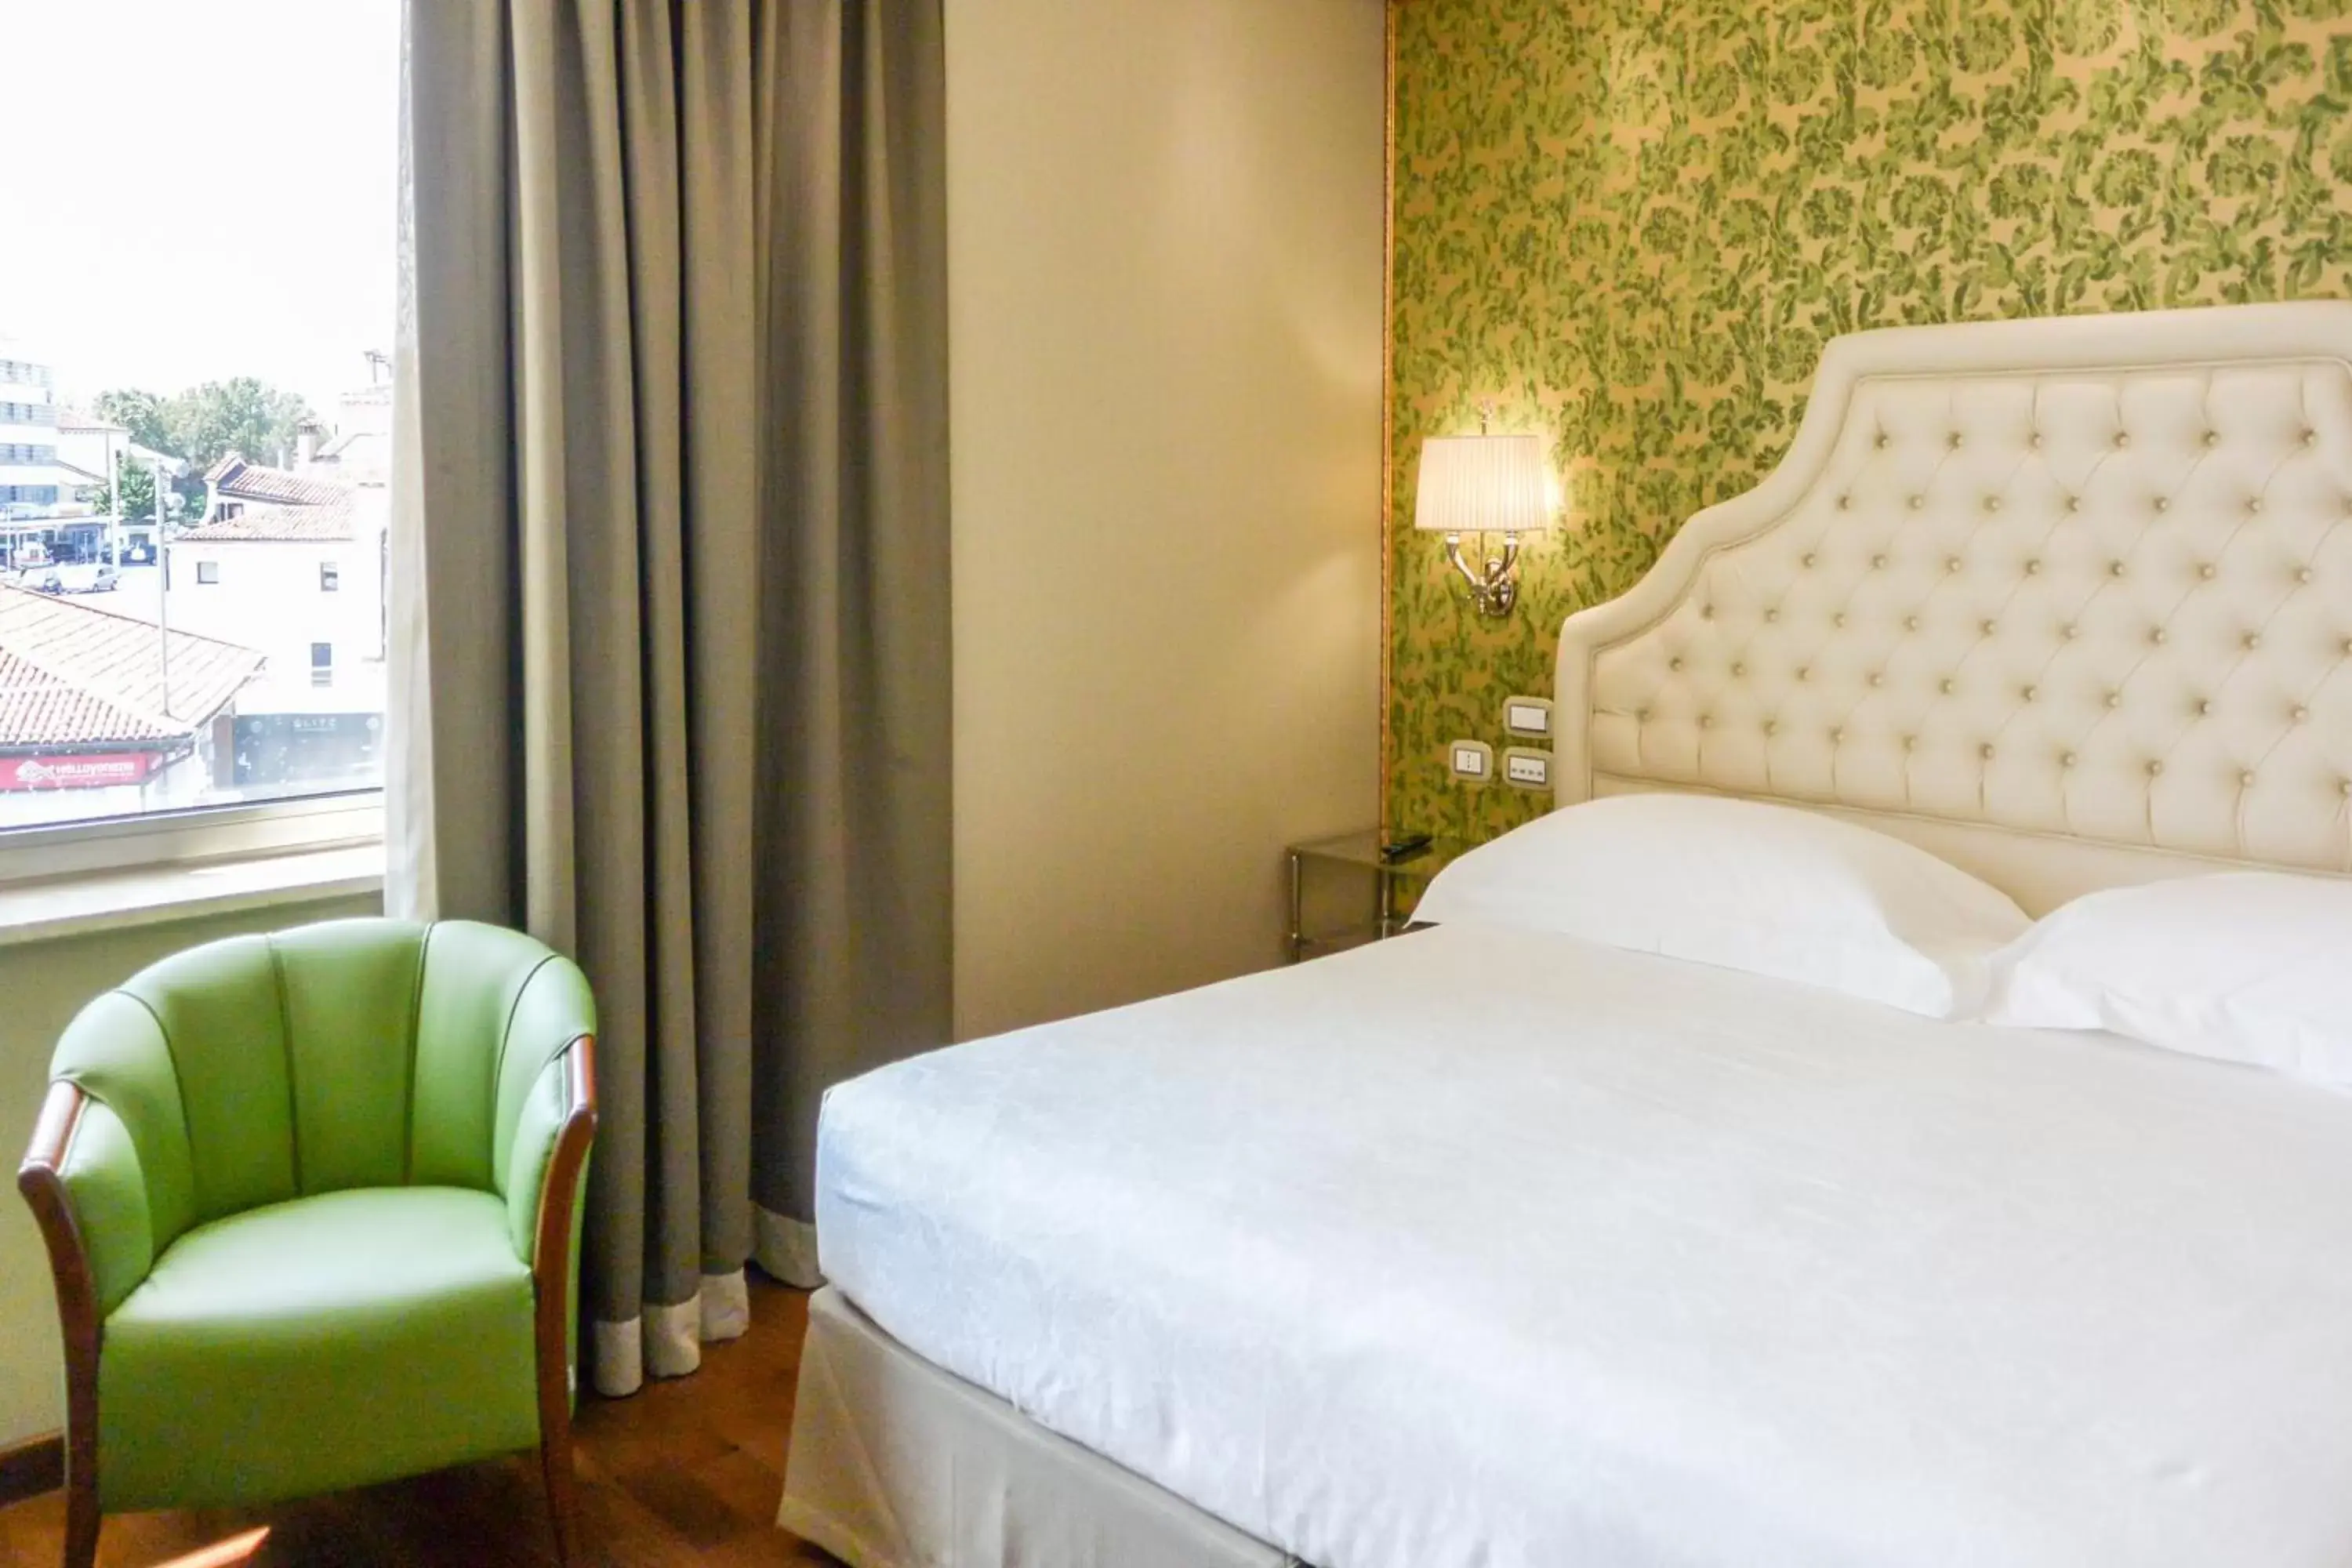 Bed, Room Photo in Hotel Santa Chiara